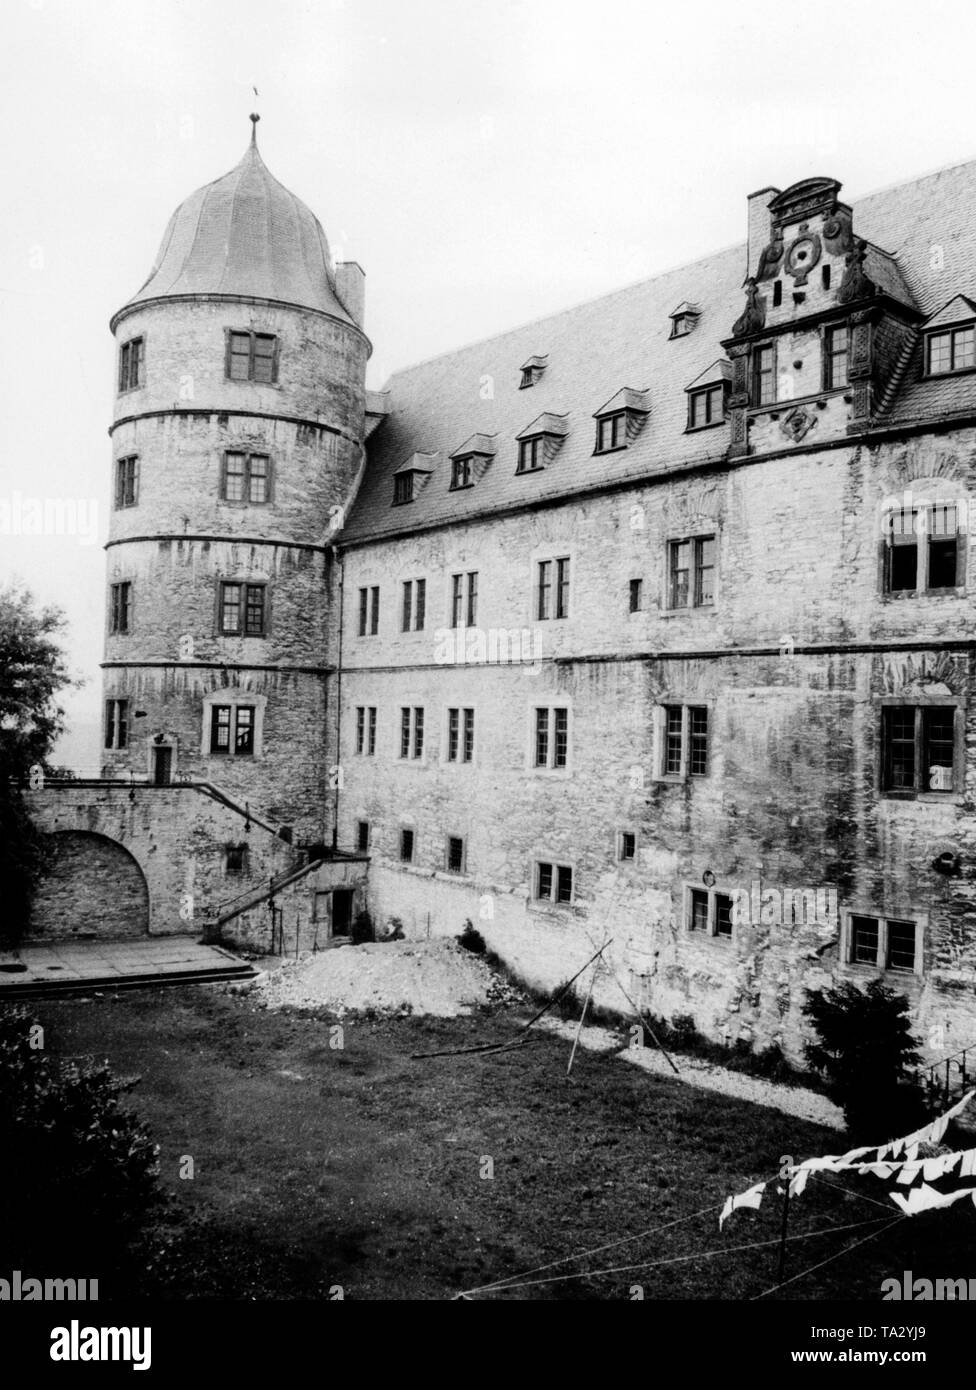 Wewelsburg come un castello nazista nel socialismo nazionale, Foto non datata. Foto Stock